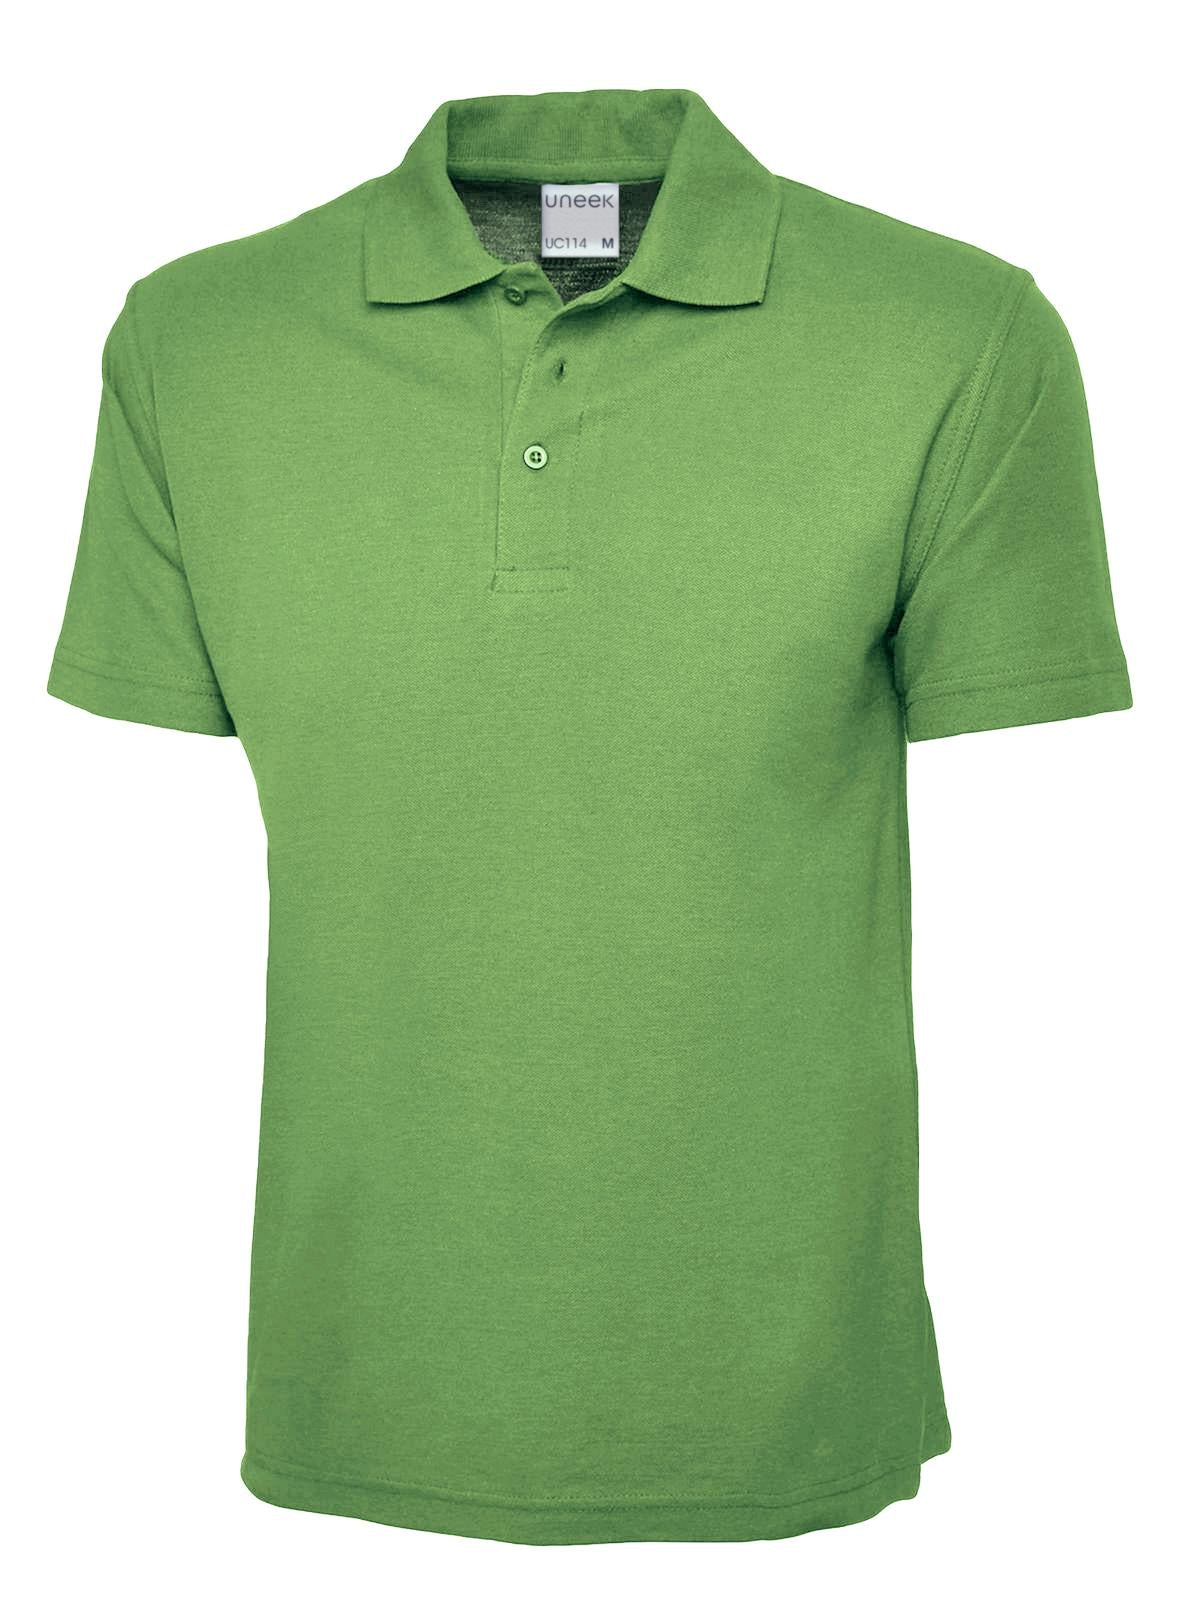 Uneek Men's Ultra Cotton Poloshirt UC114 - Lime